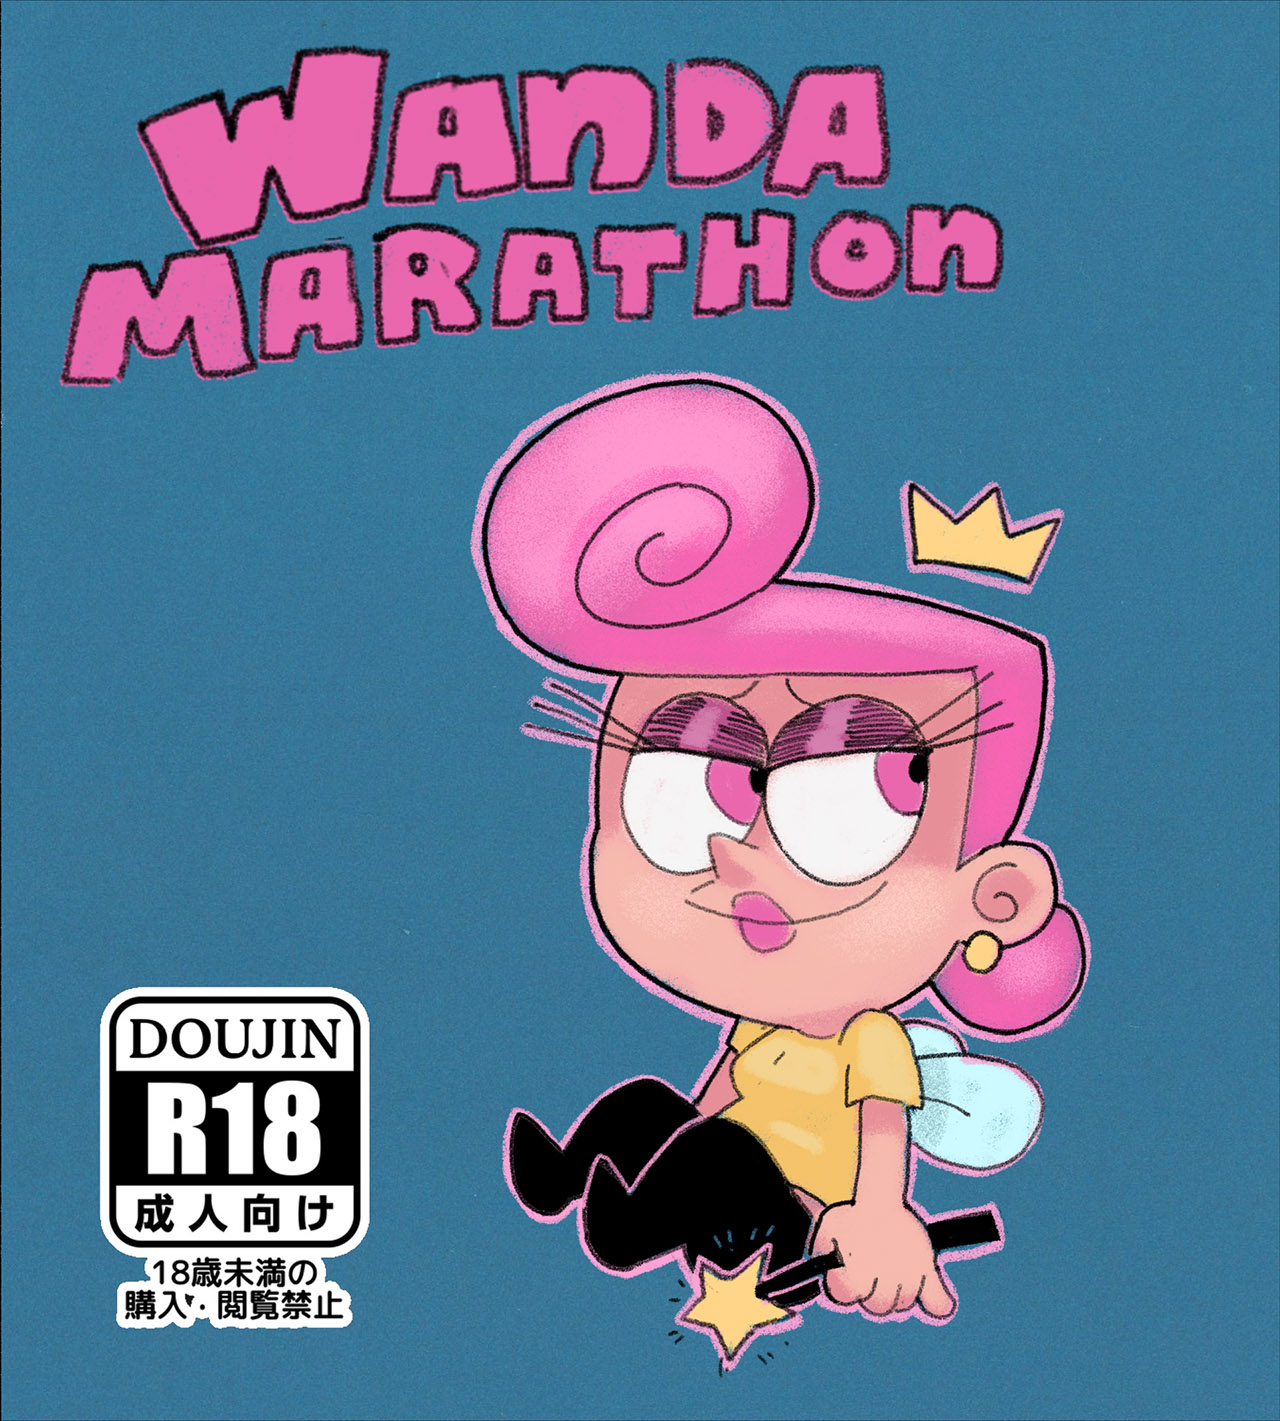 WANDA Marathon